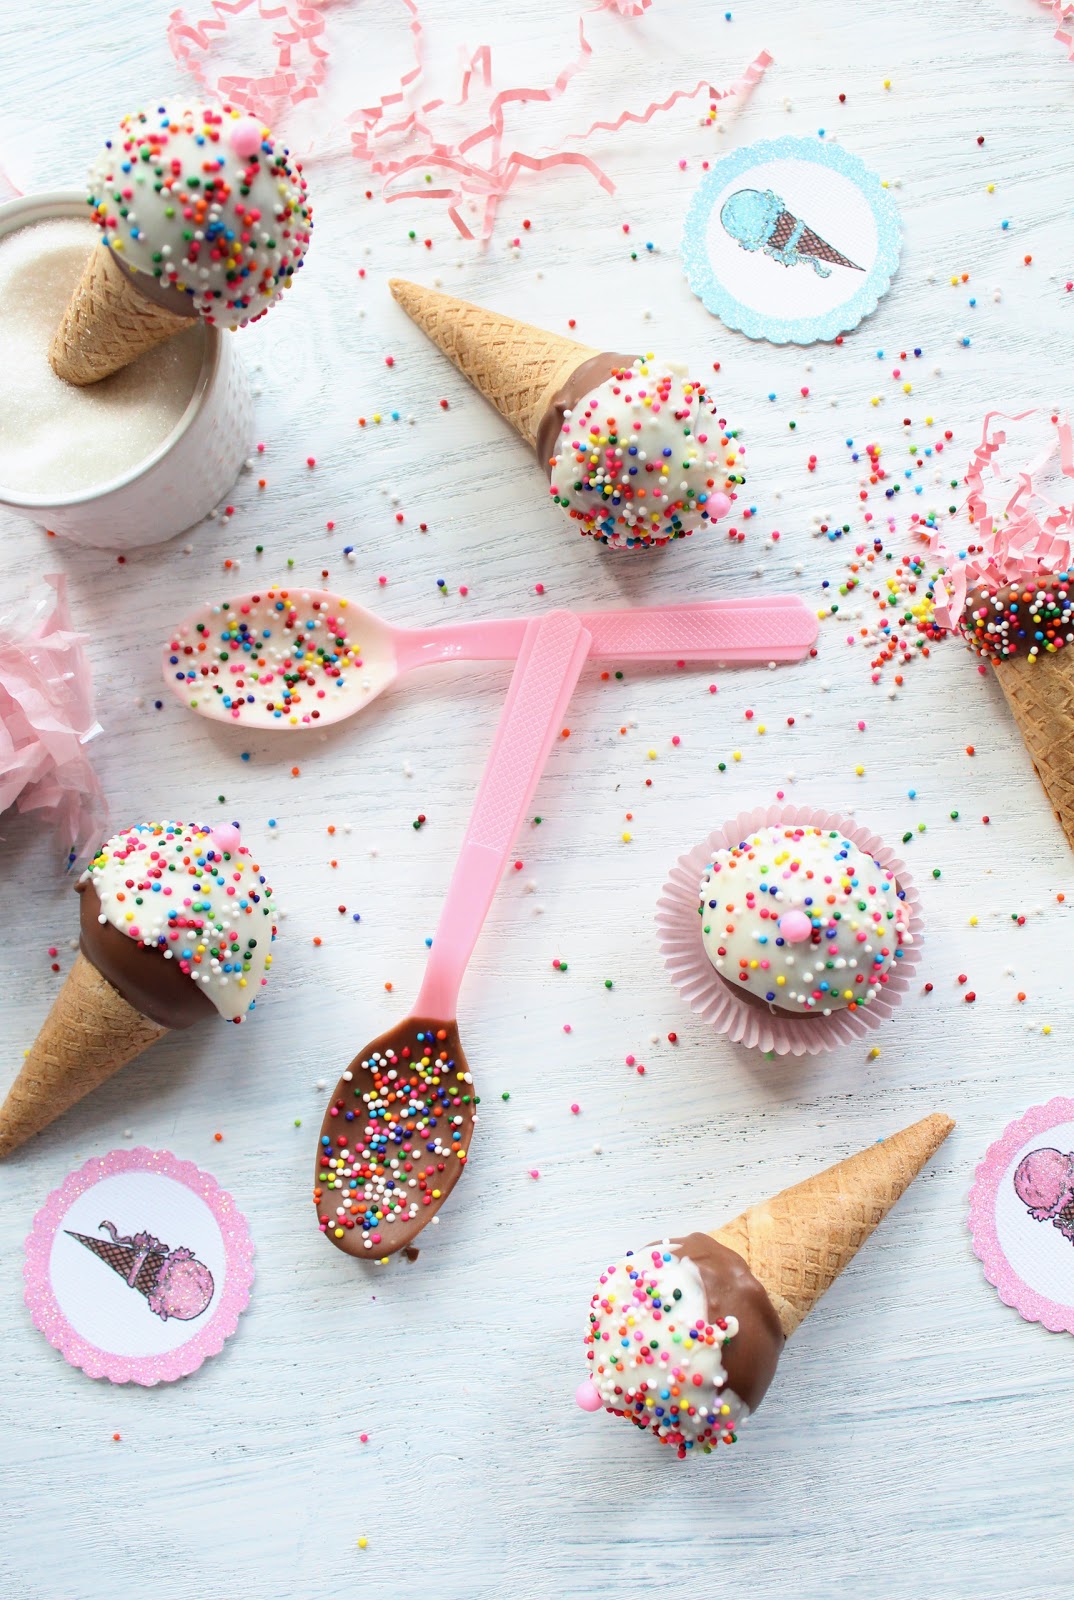 Icing Designs: Ice Cream Cone Cake Pops